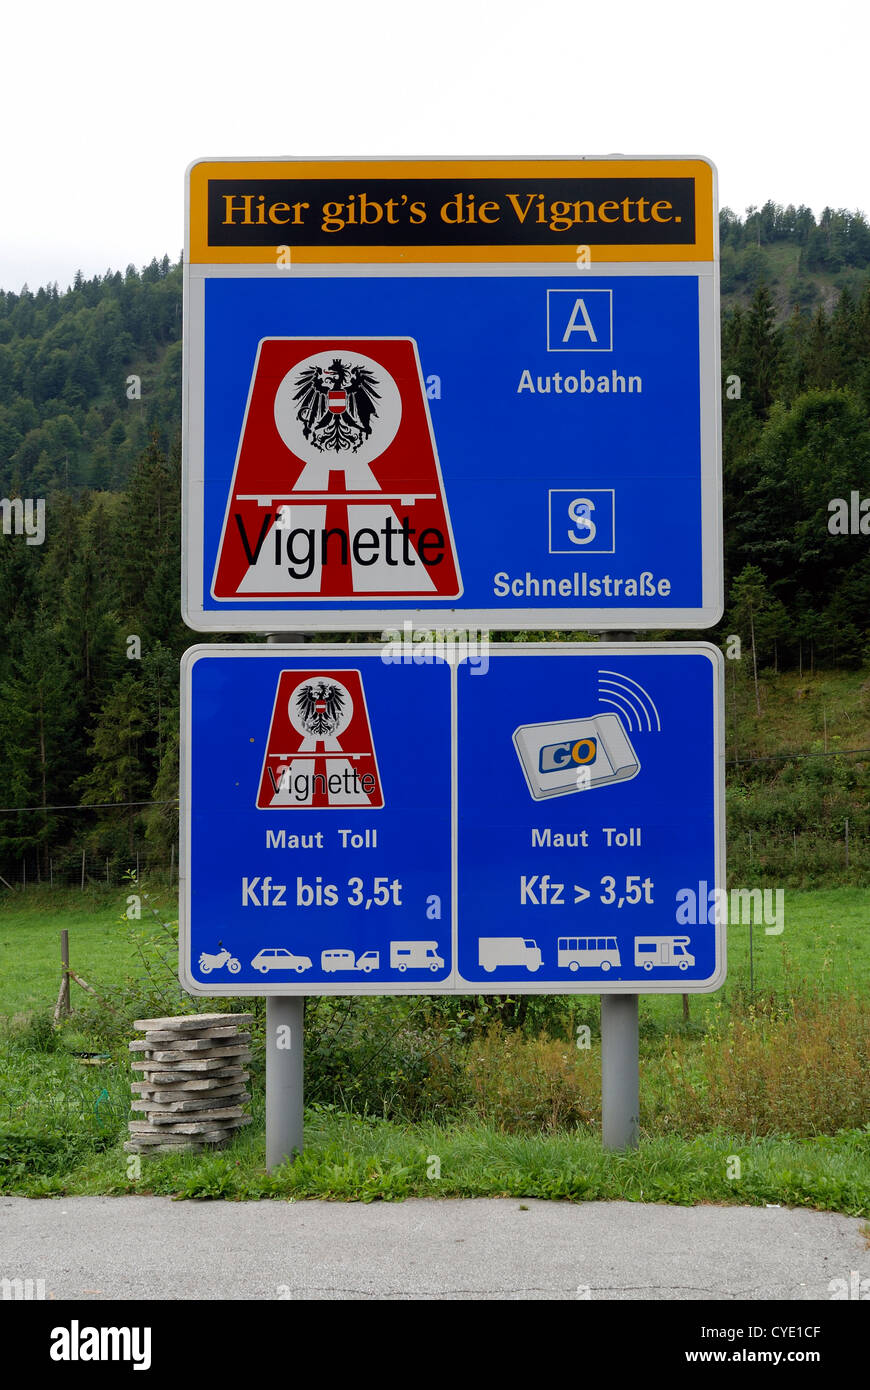 Cartel con referencia al deber de Vignette en autopistas en Austria. Foto de stock